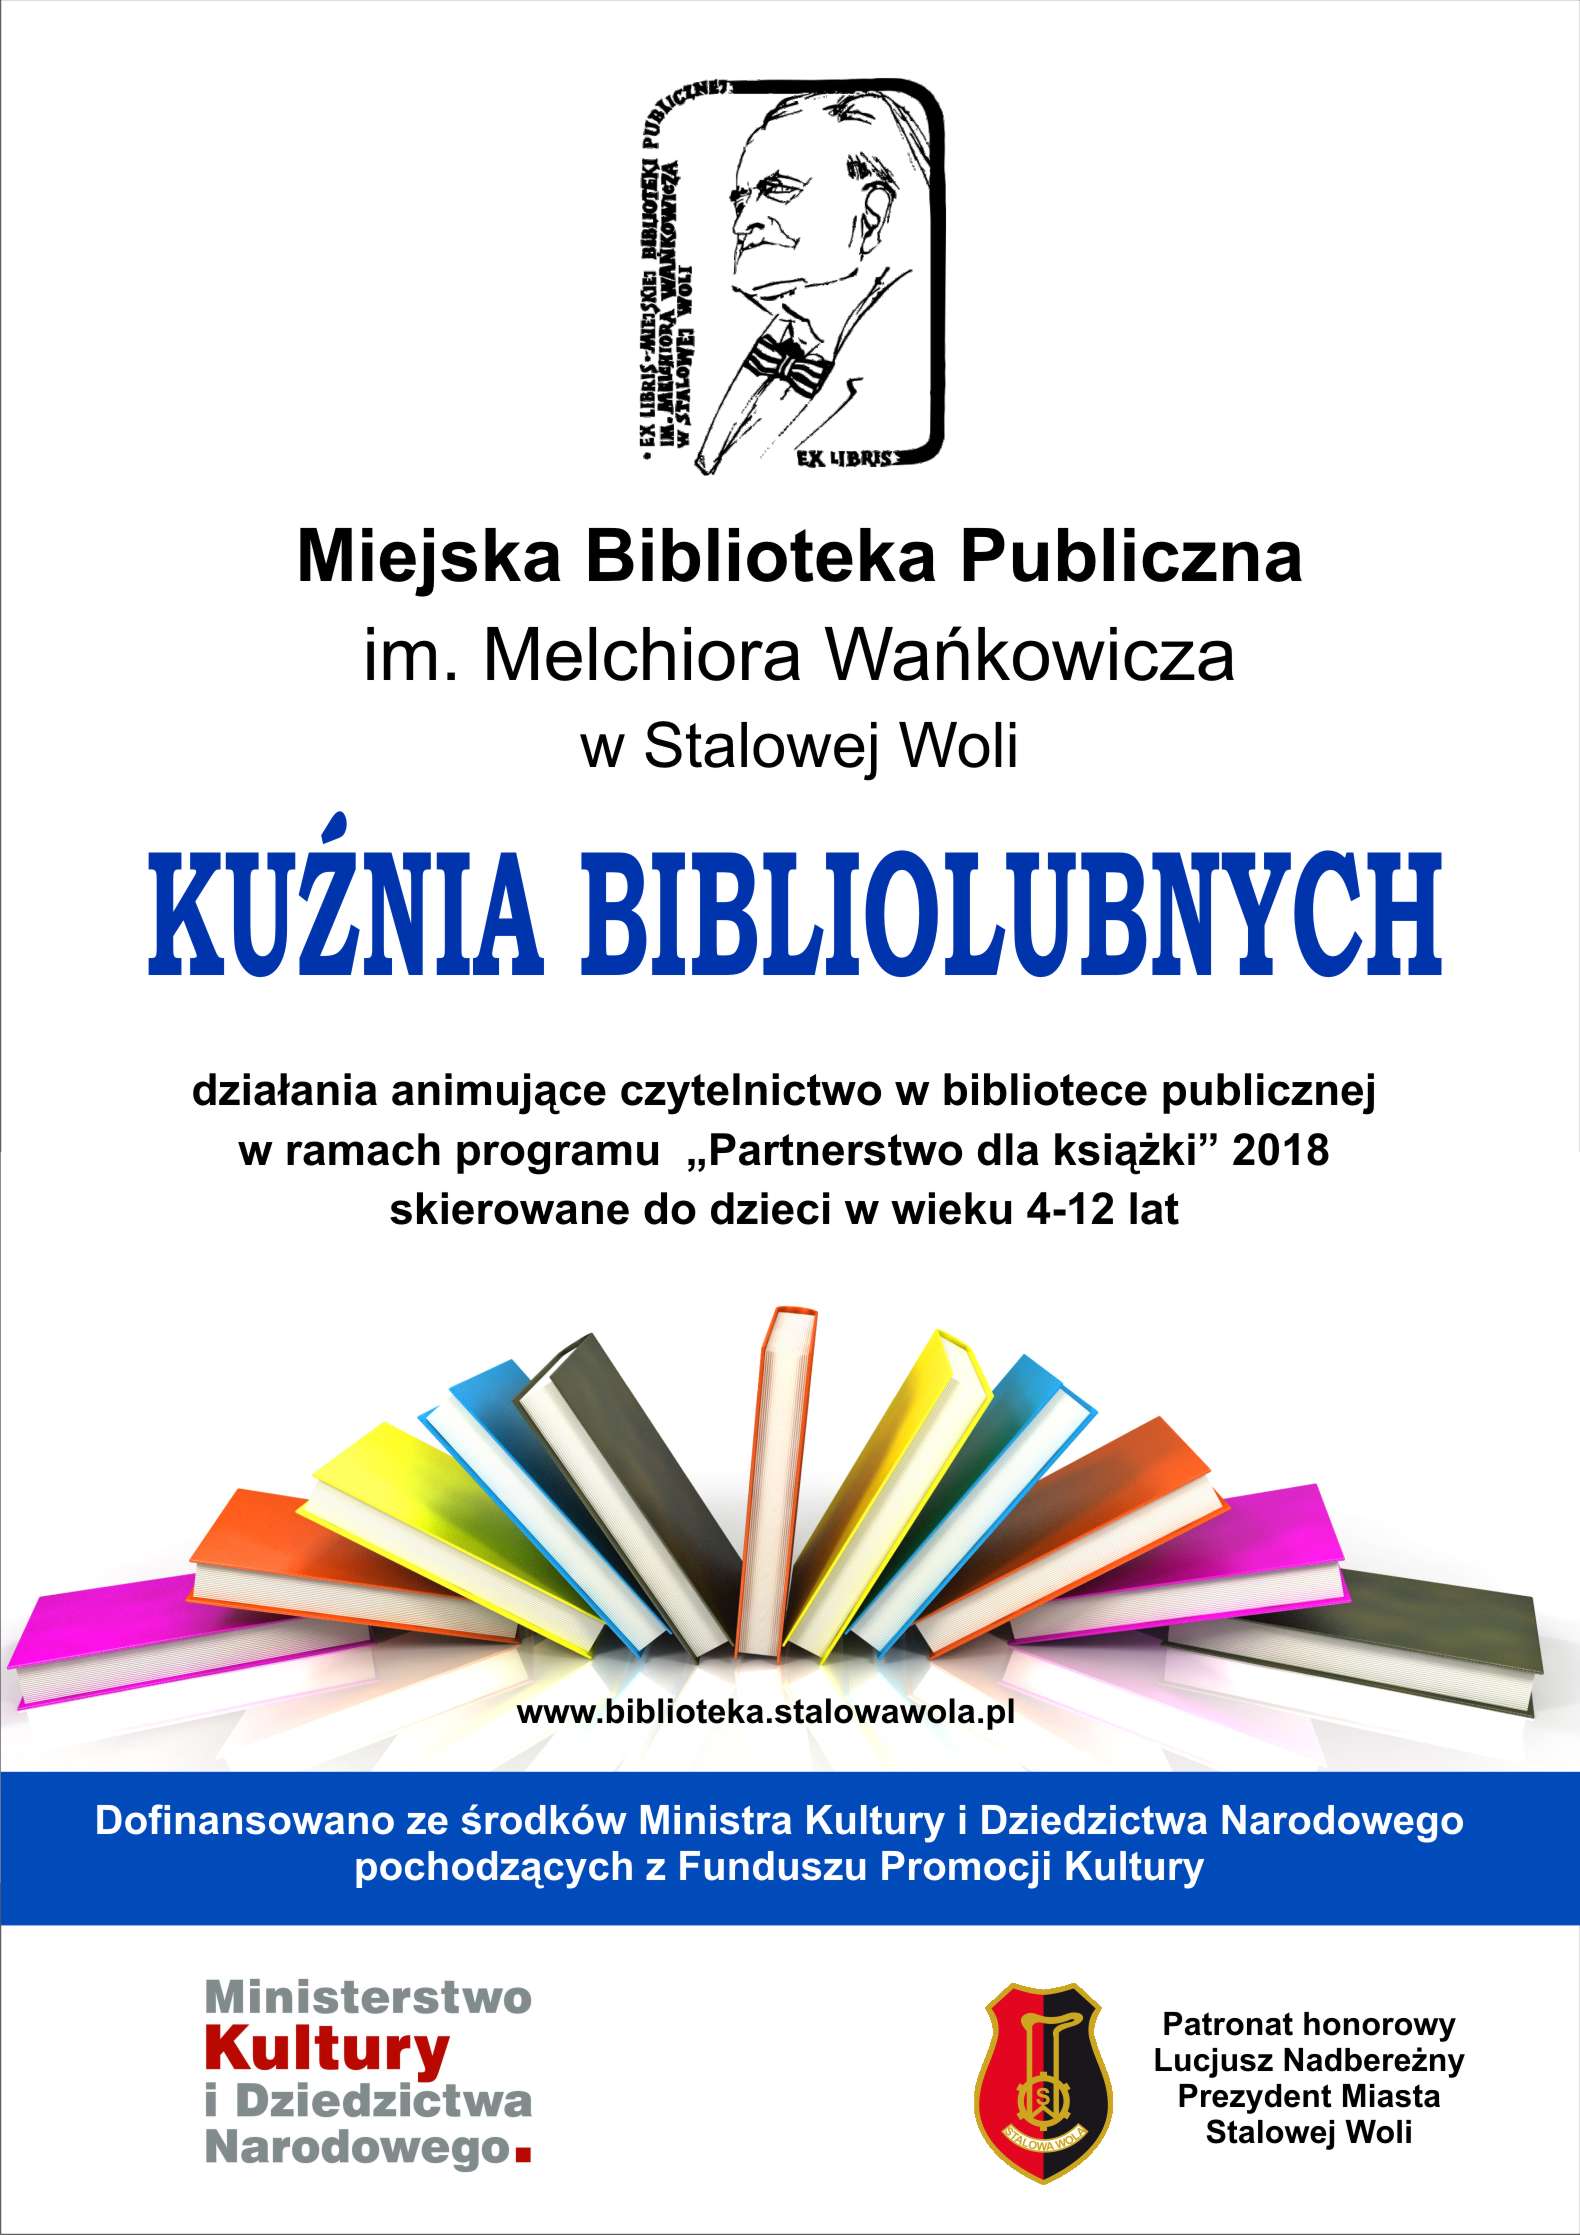 MBP w Stalowej Woli otrzymała dotację MKiDN na realizację projektu Kuźnia bibliolubnych